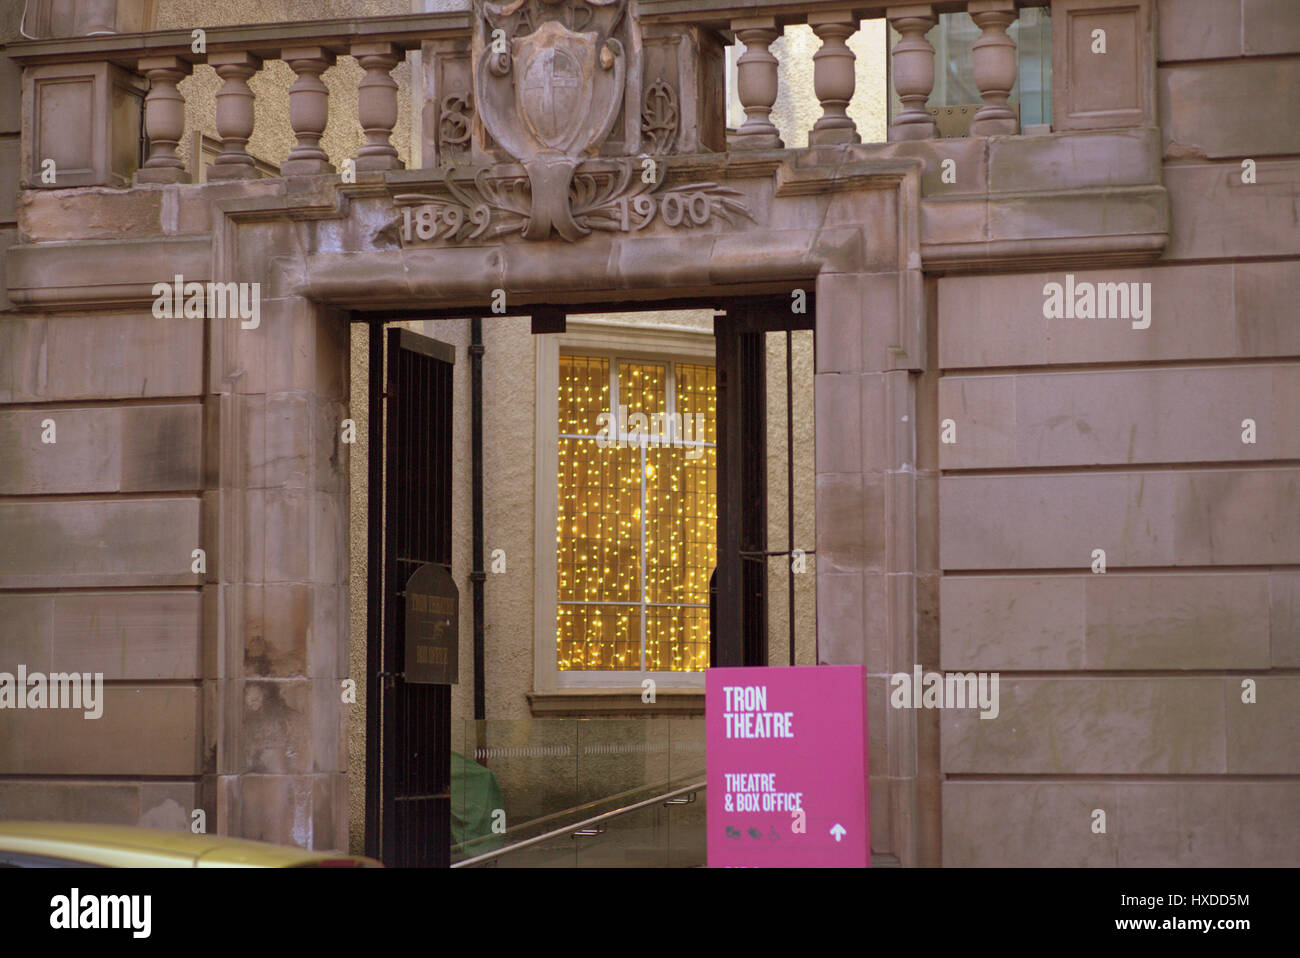 Tron theatre entrance Glasgow Stock Photo